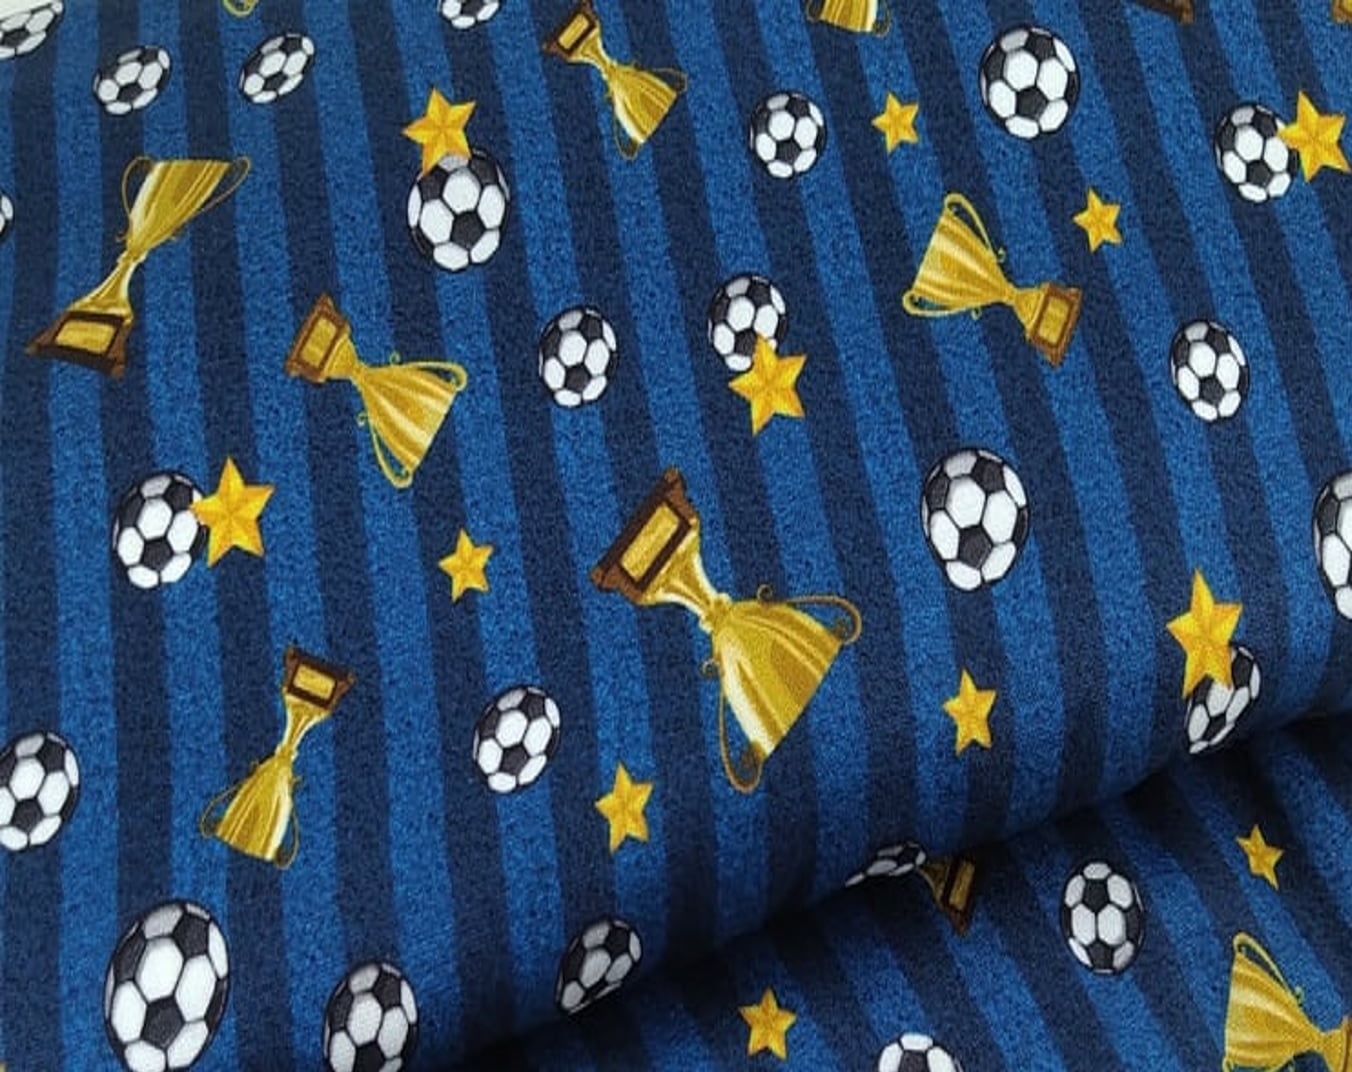 Tecido Tricoline Digital Bolas De Futebol e Troféus - Fundo Listrado Azul